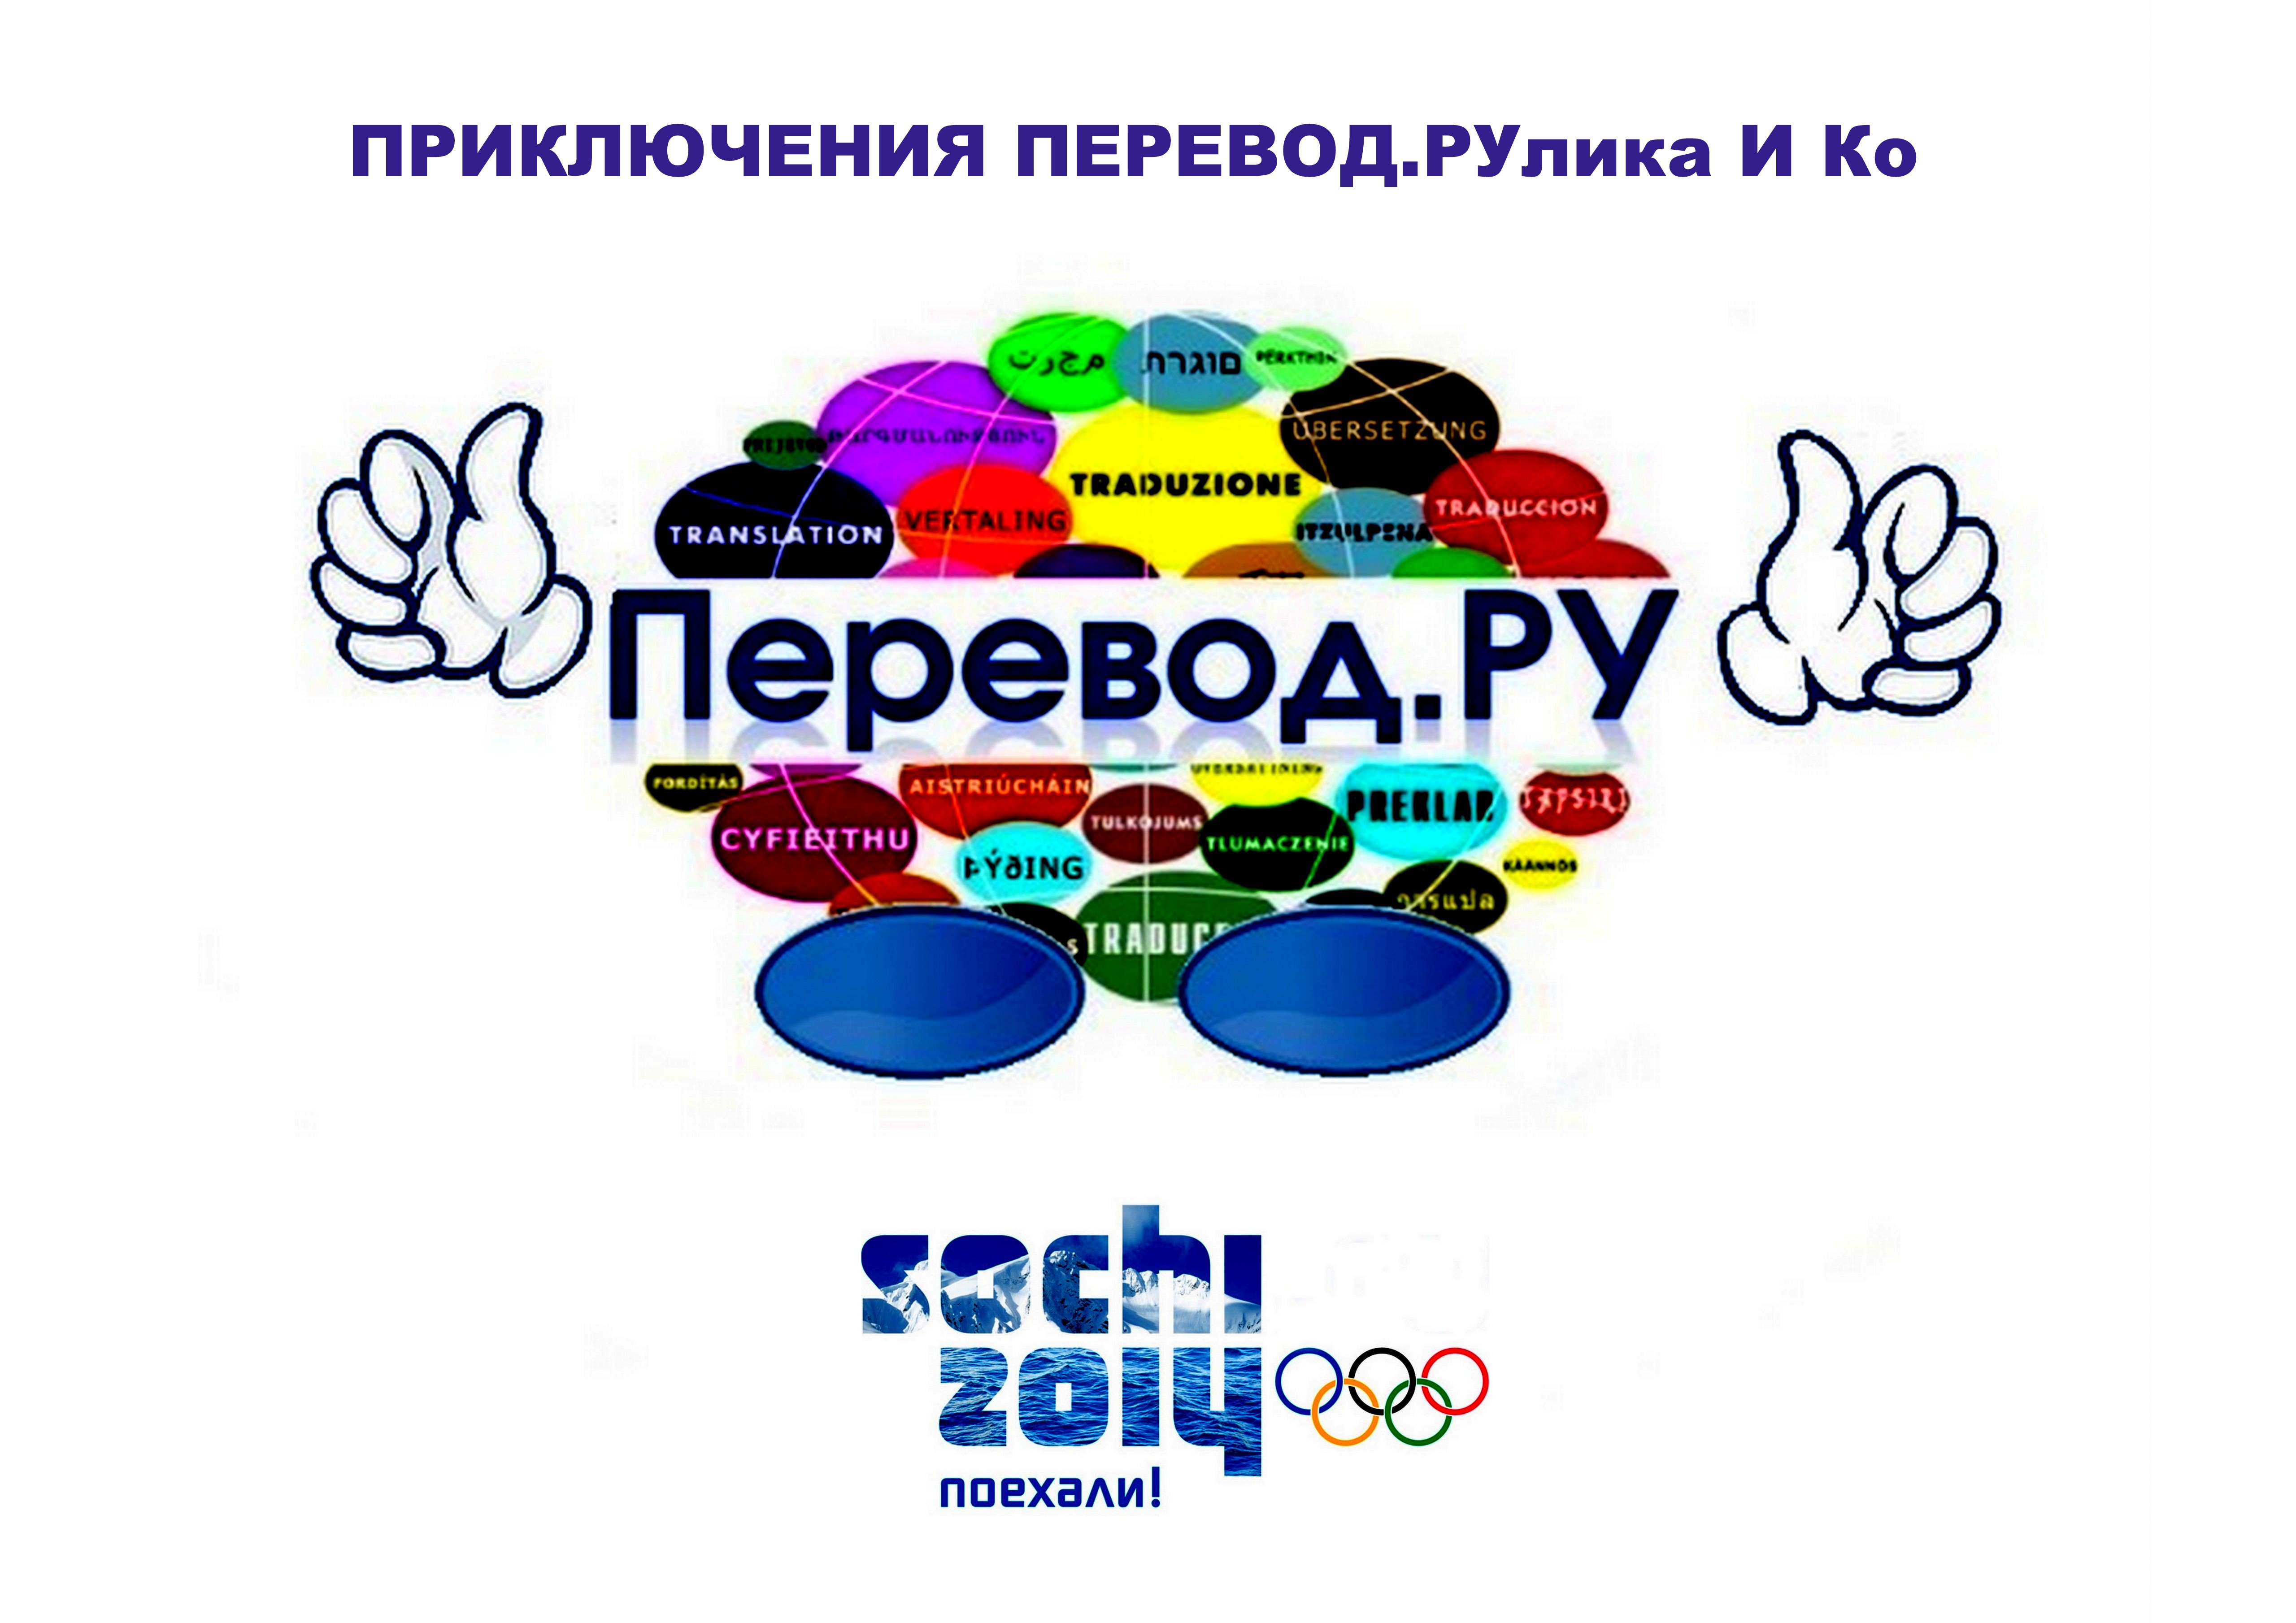 Олимпийские игры в Сочи и ПЕРЕВОД.РУлик